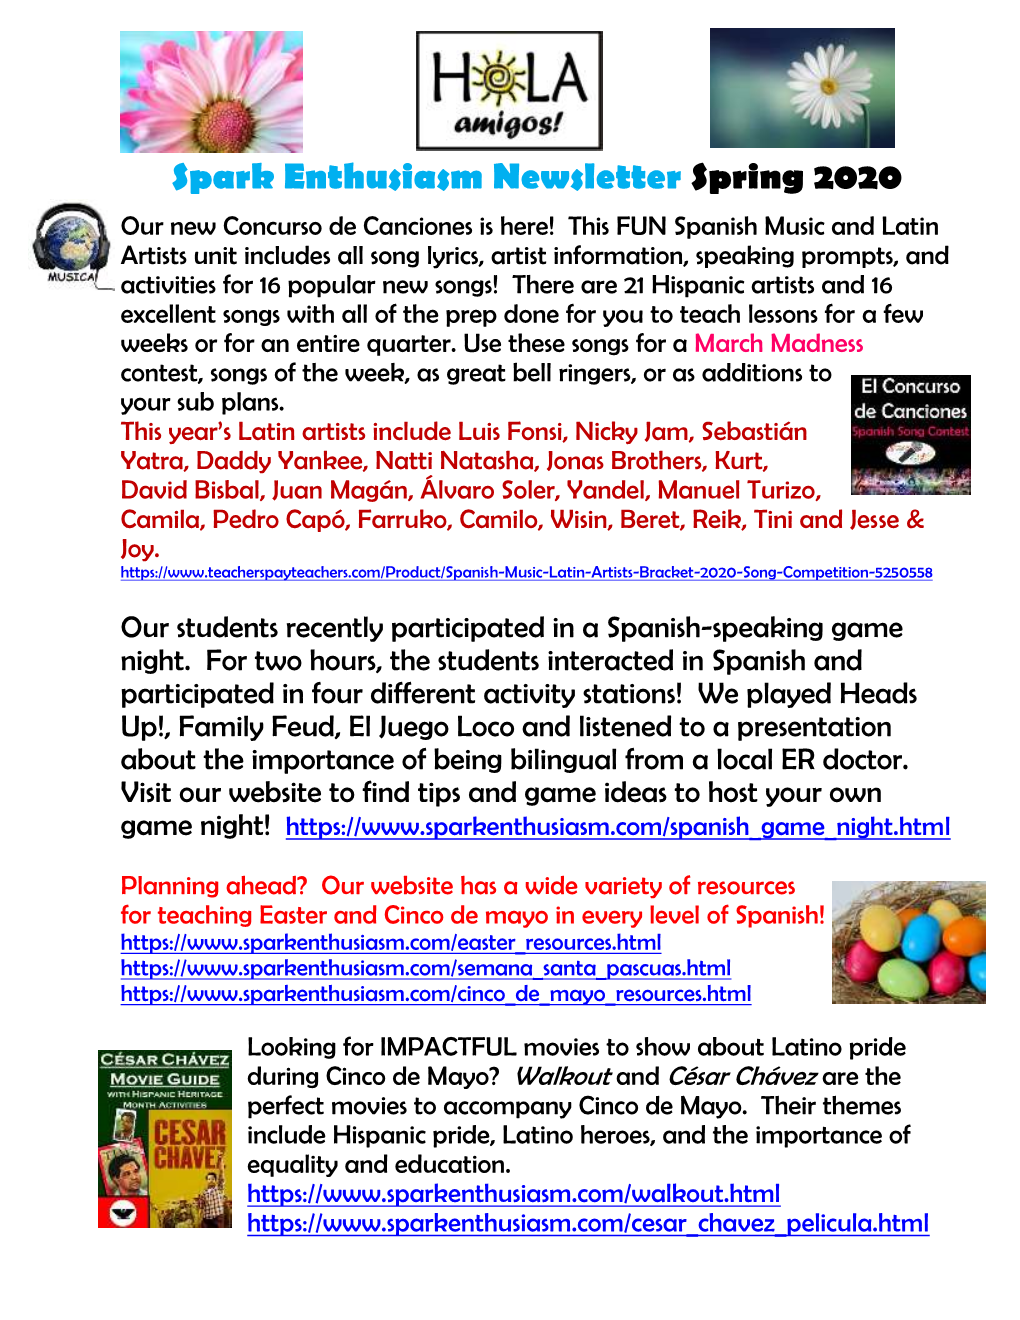 Spring 2020 Newsletter